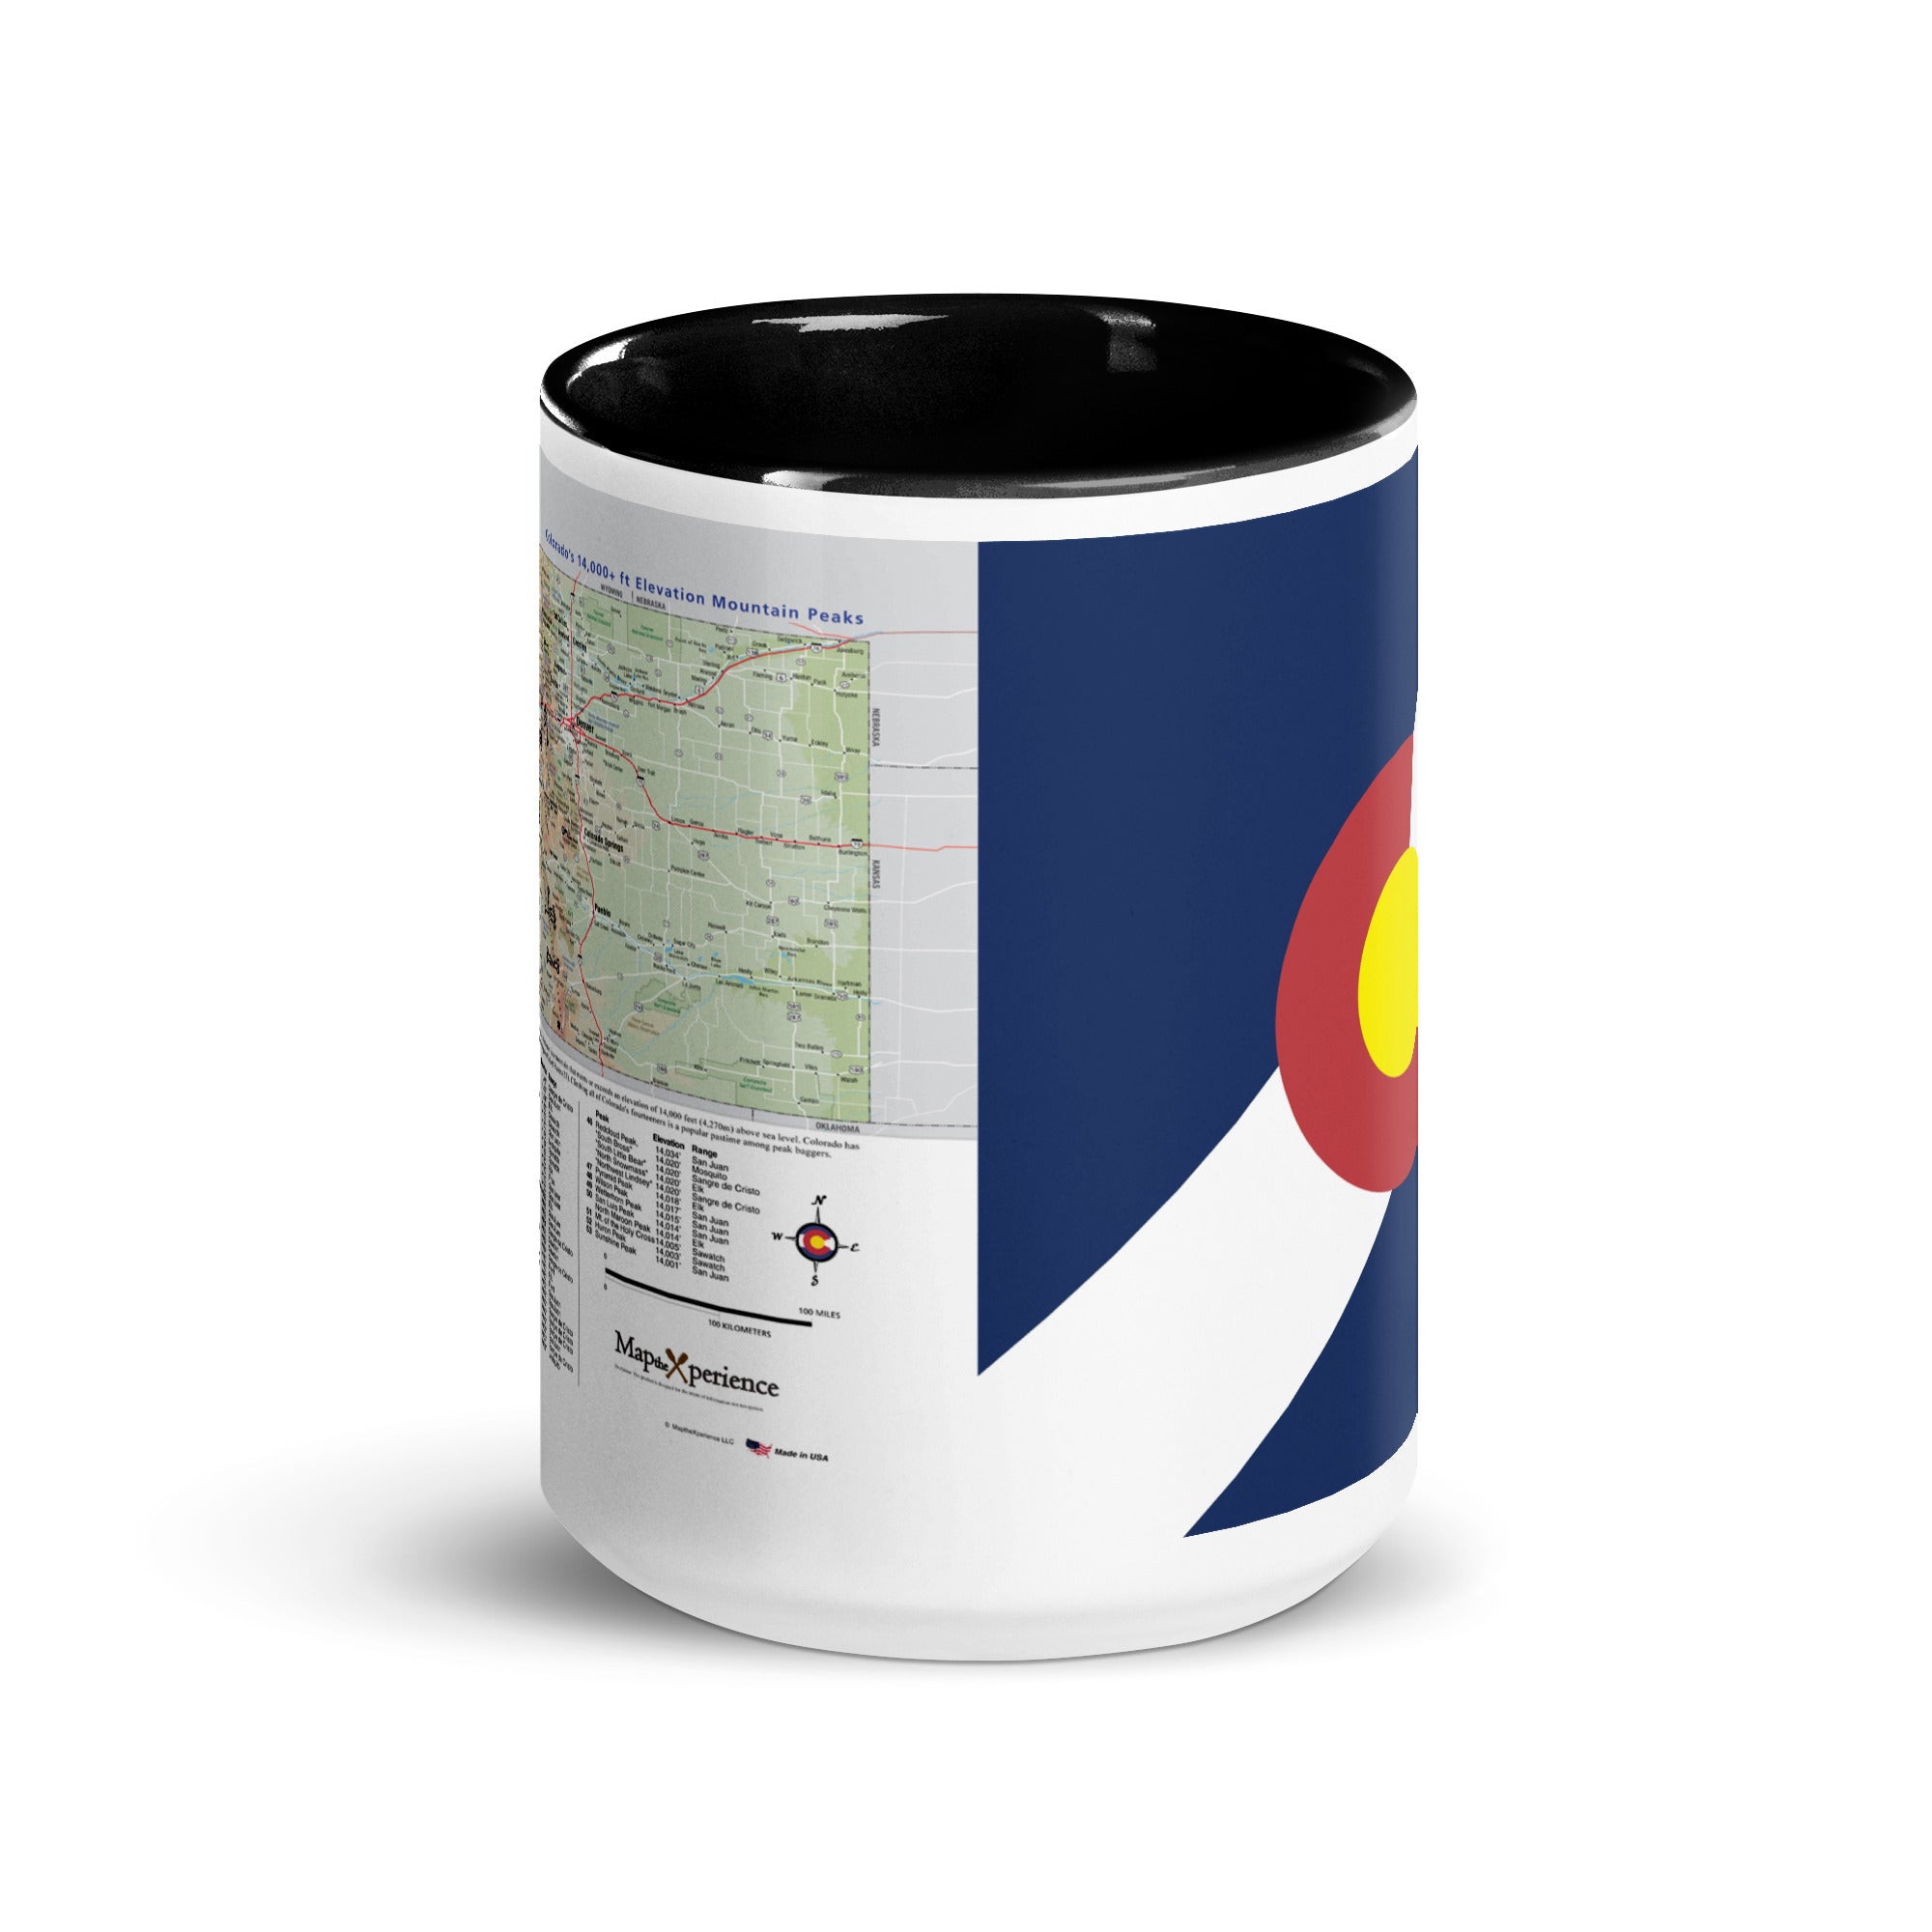 Colorado 14er's Map Mug with Black Inside